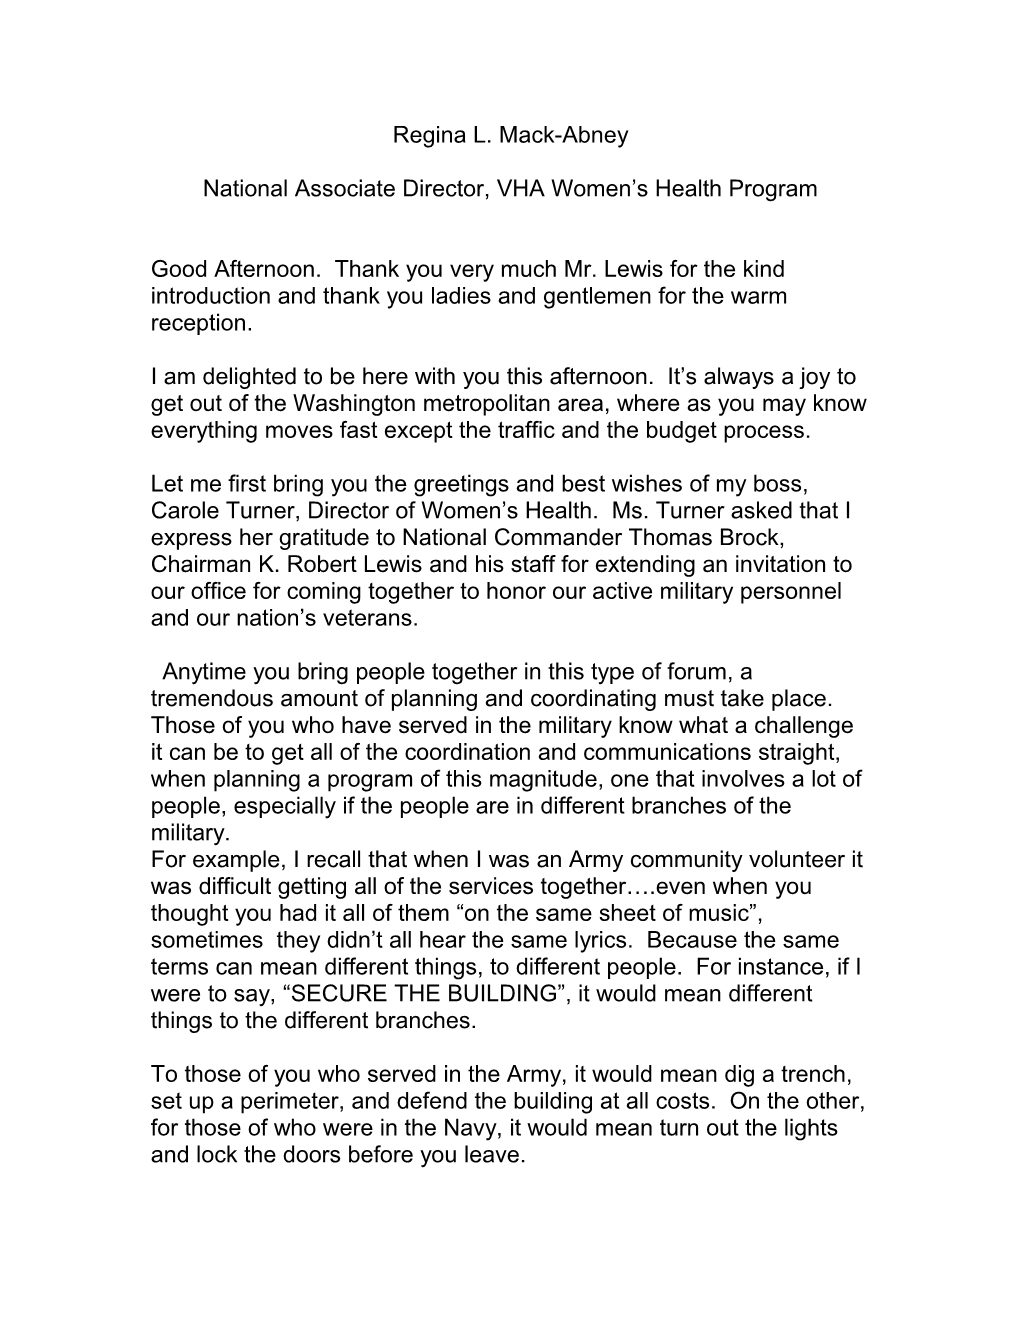 National Associate Director, VHA Women S Health Program